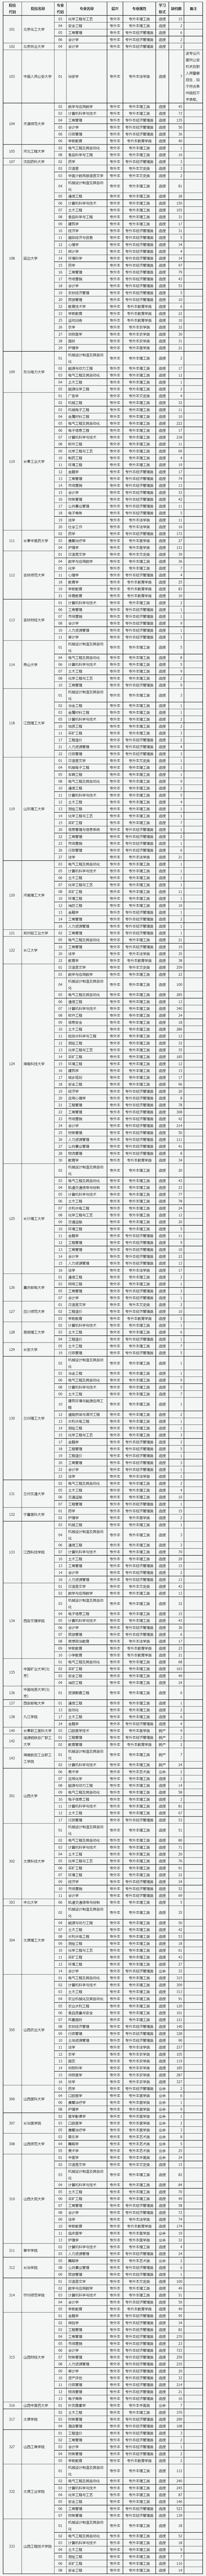 山西省2022年成人高校招生征集志愿公告第4号.png